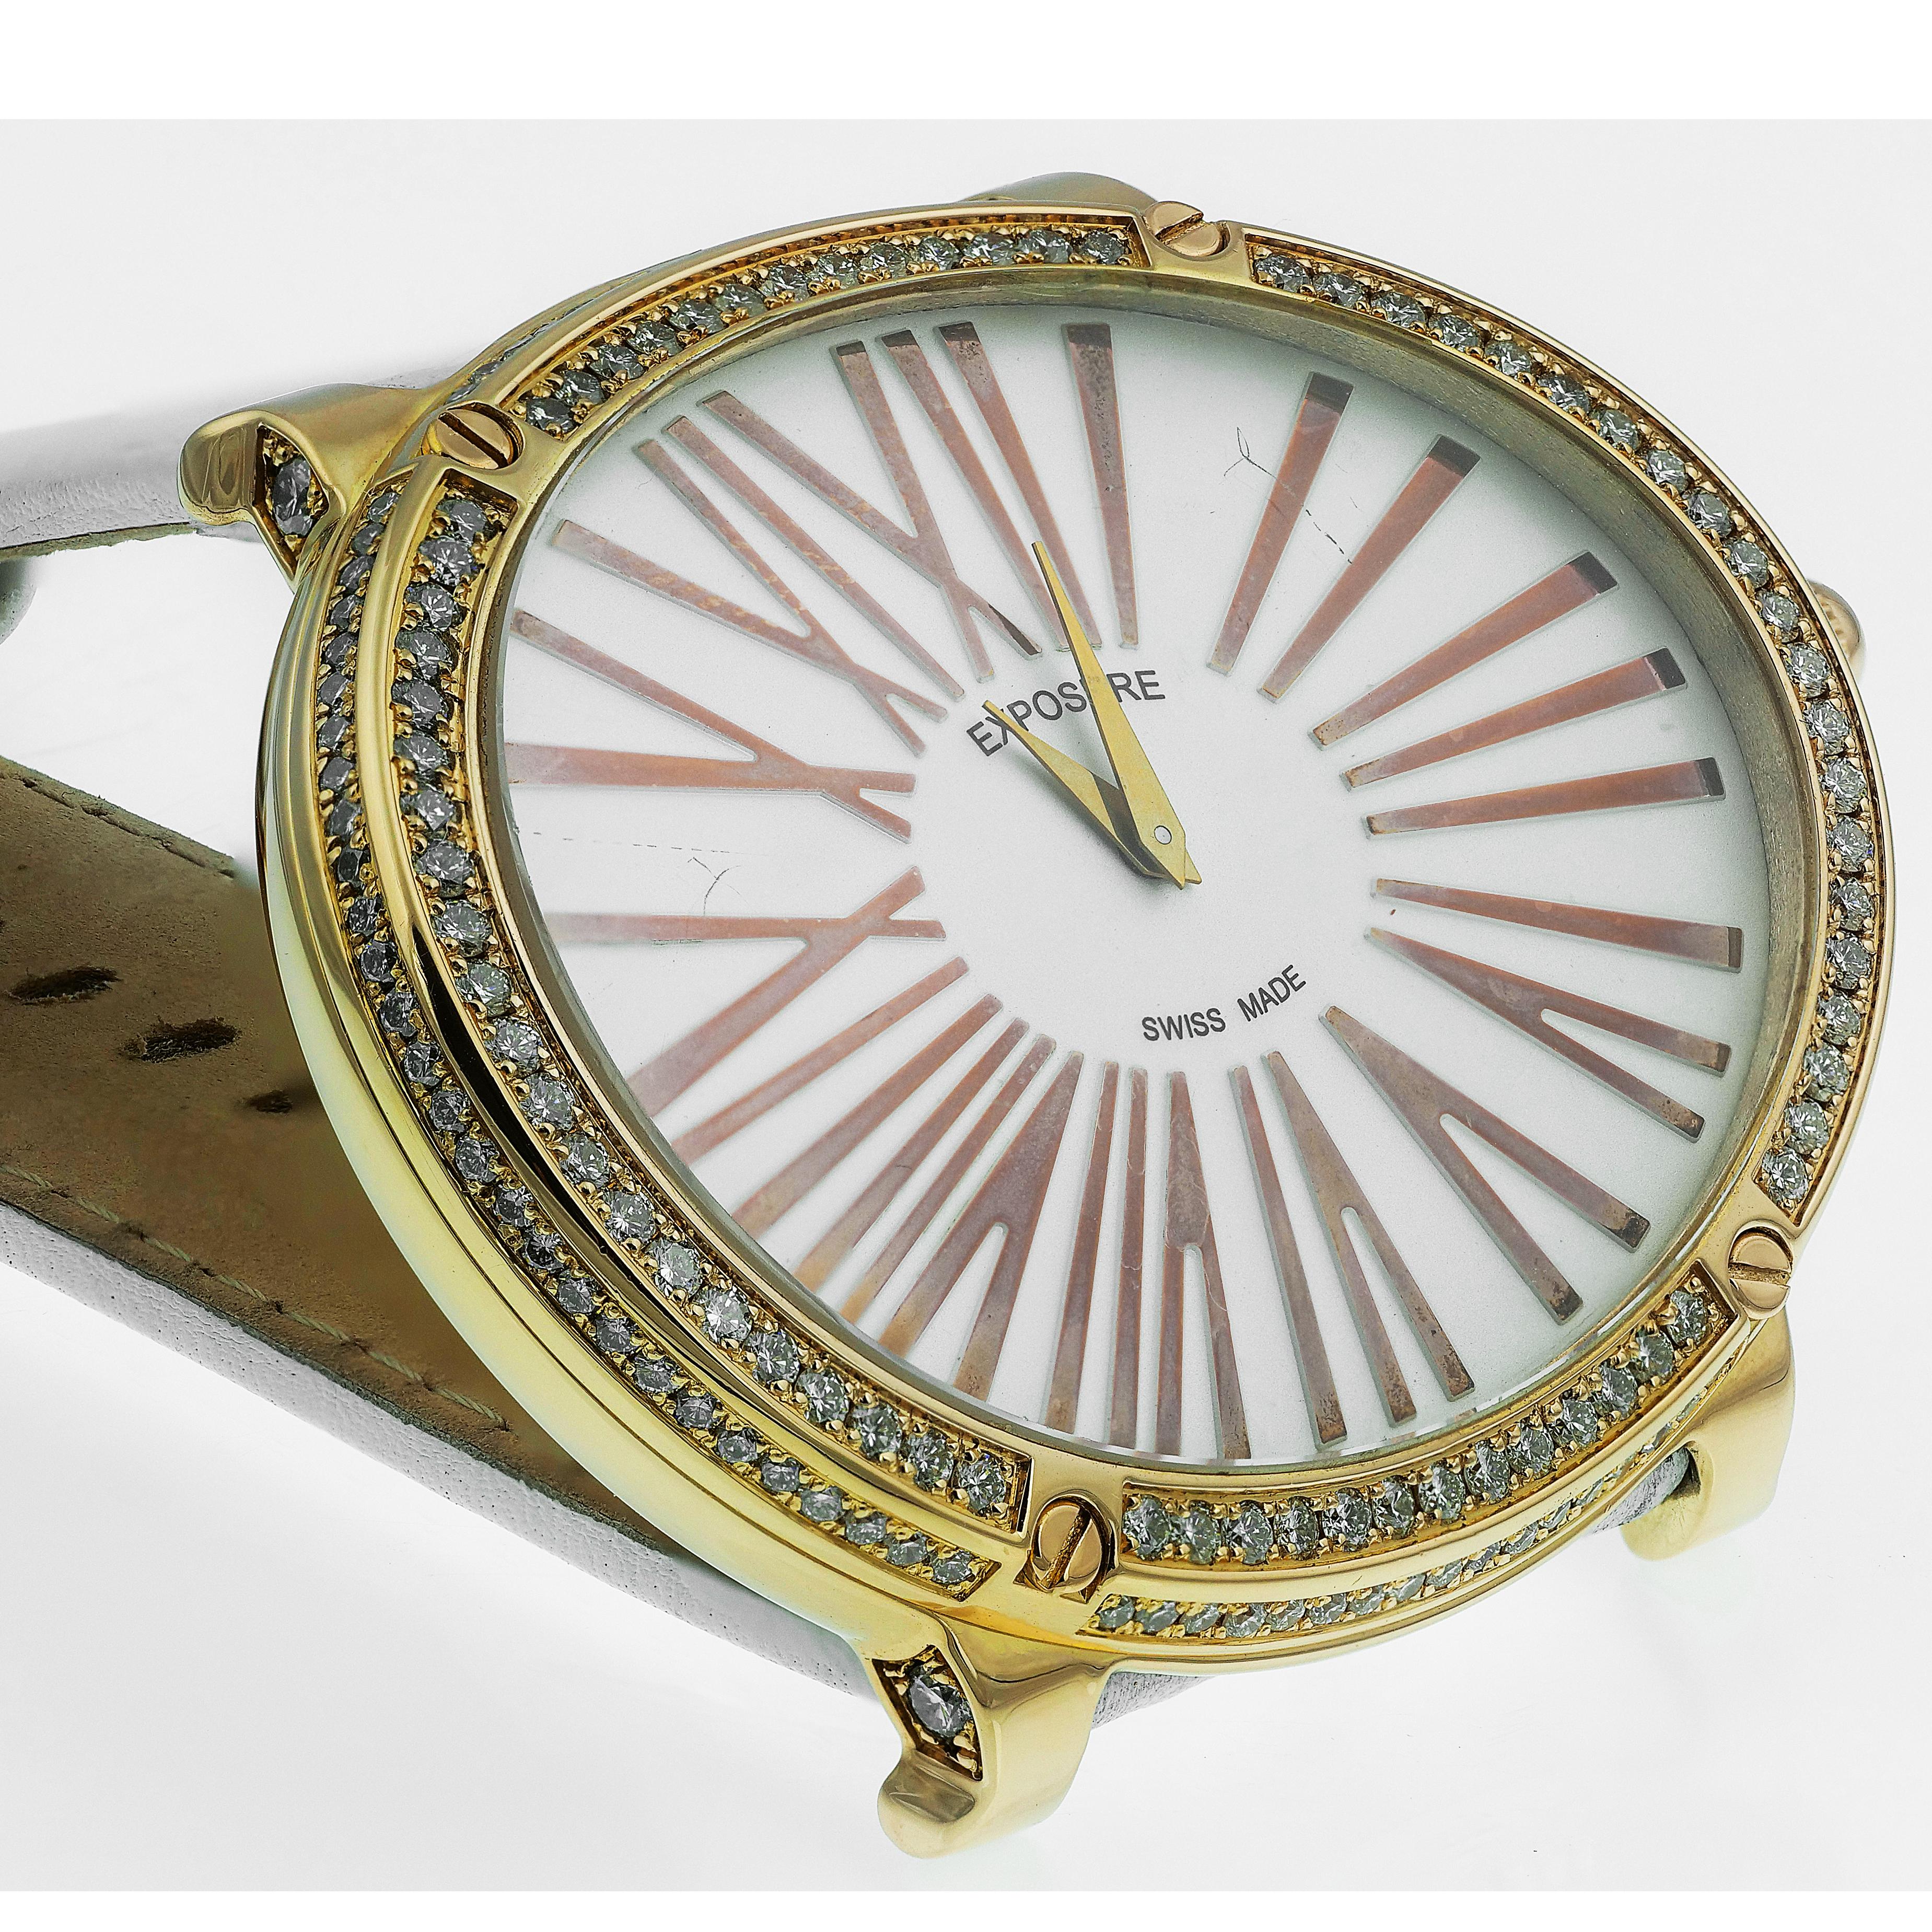 Superbe montre d'exposition avec un cadran blanc, de grands chiffres romains en or et un mouvement à quartz. Une épaisse bordure ovale en or incrustée de diamants ronds de taille brillant scintillants. Les larges bracelets en cuir blanc complètent